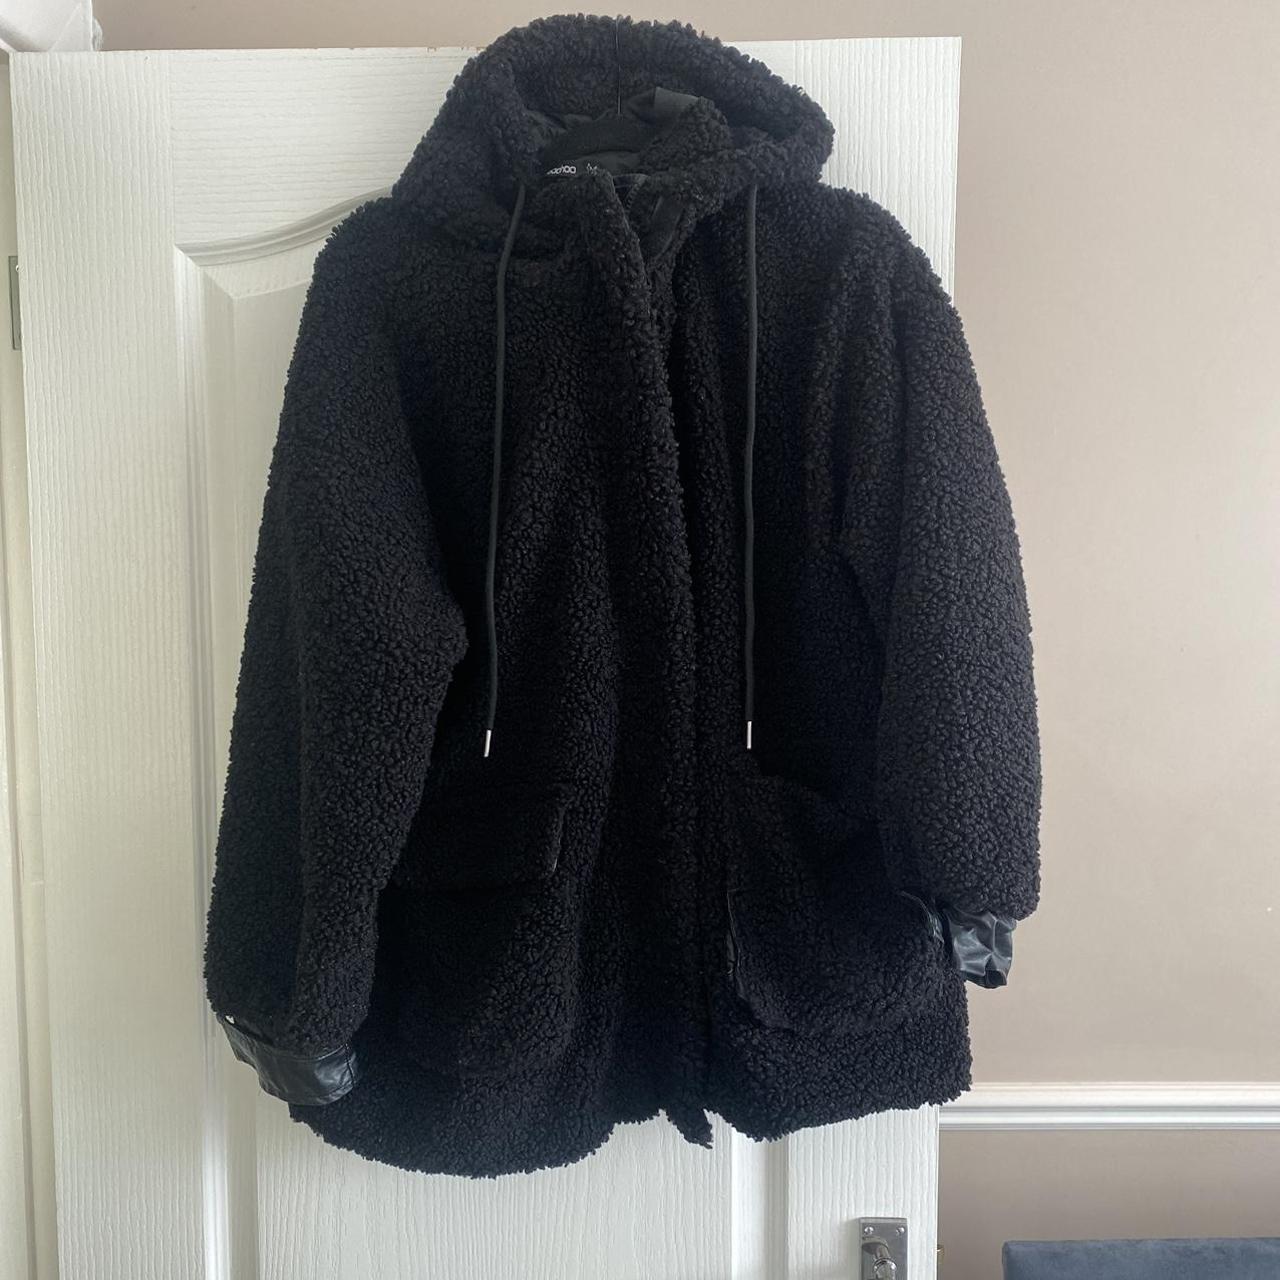 Black Teddy Bear Coat. Size 8. Velcro is coming... - Depop